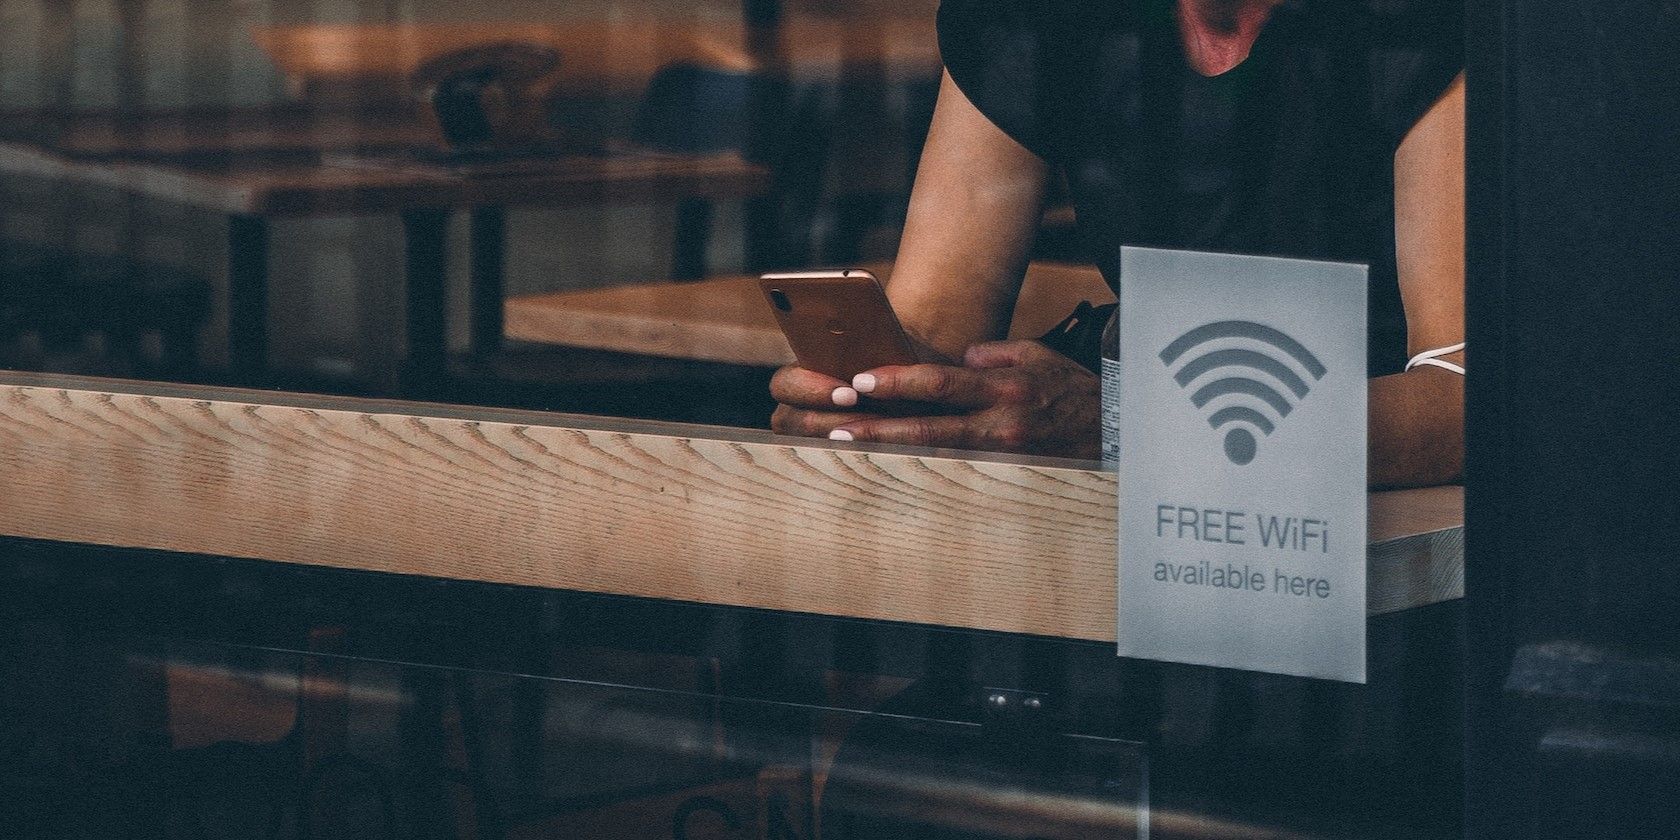 Woman in Black Tank Top Using WiFi in Coffee Shop